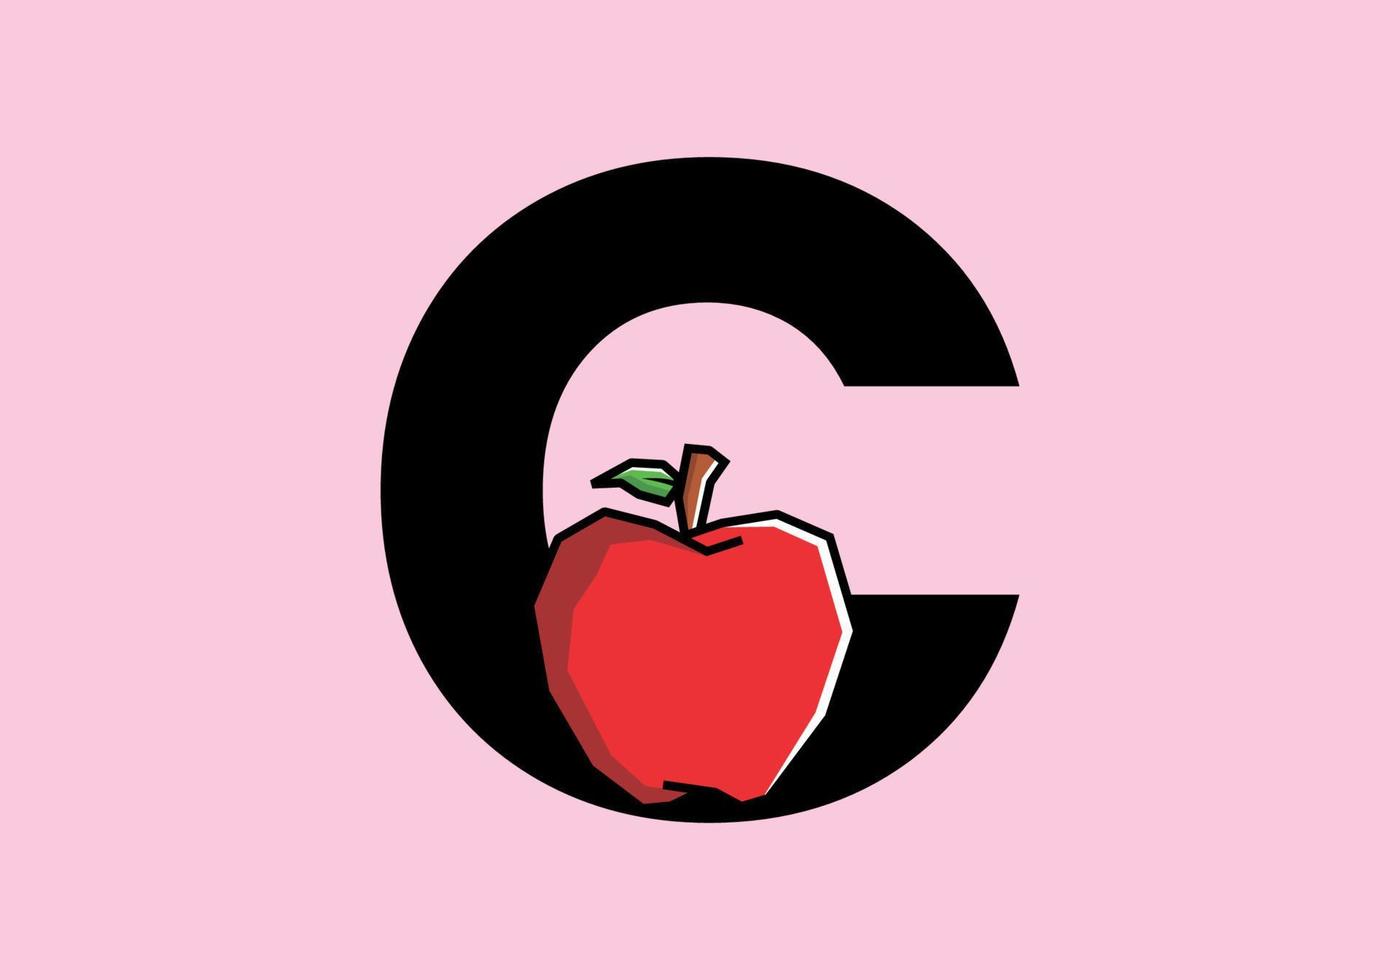 c lettera iniziale con mela rossa in stile artistico rigido vettore